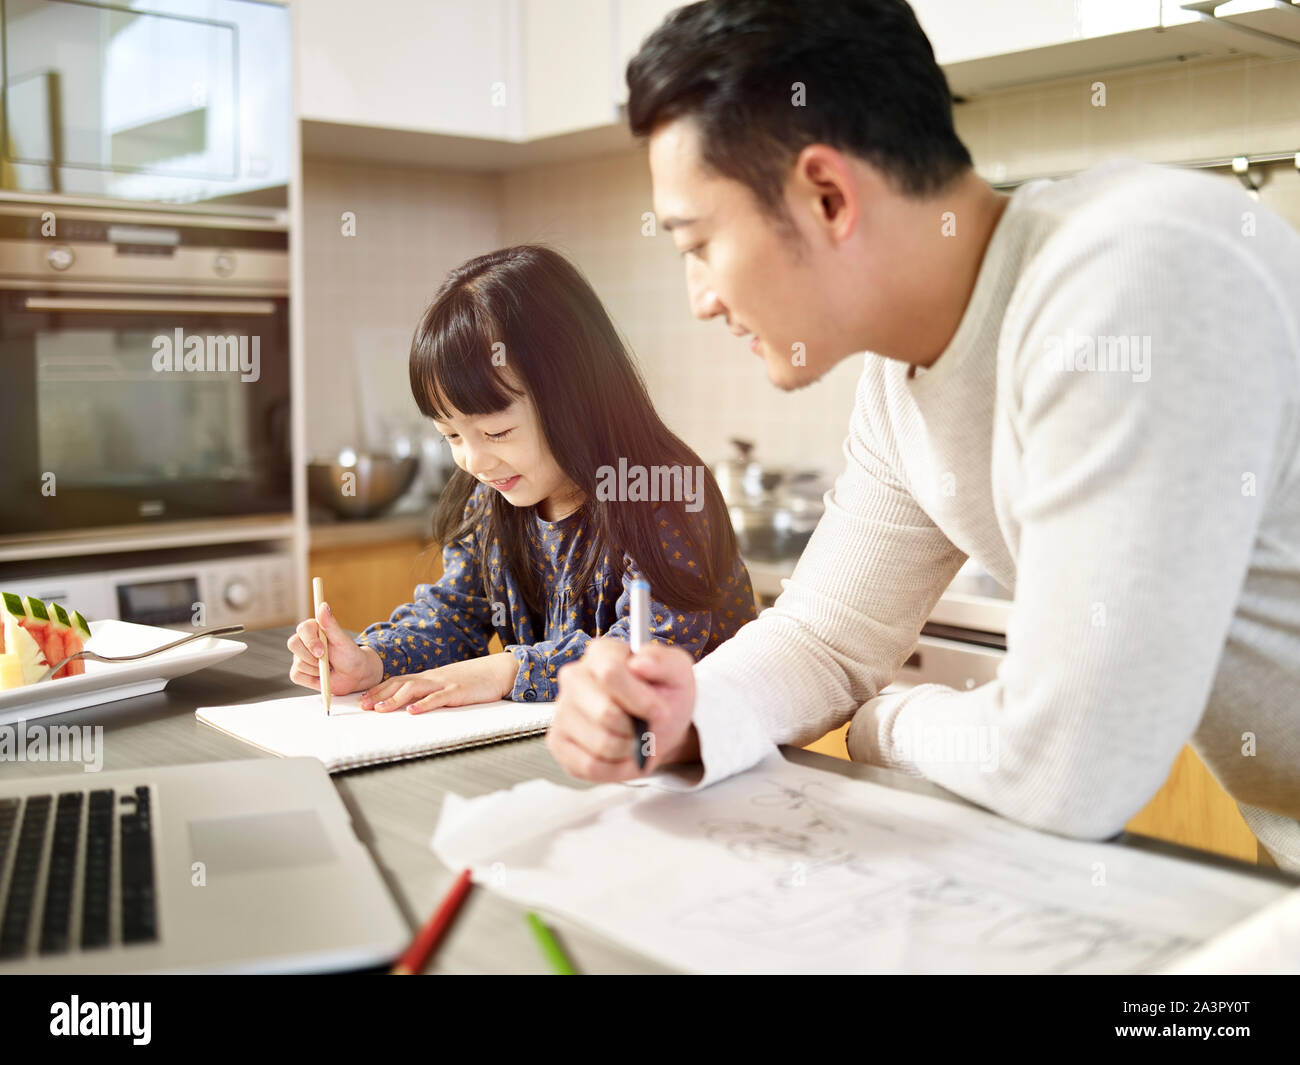 Young Asian man free lance designer père travailler à la maison tout en prenant soin de sa fille. Banque D'Images